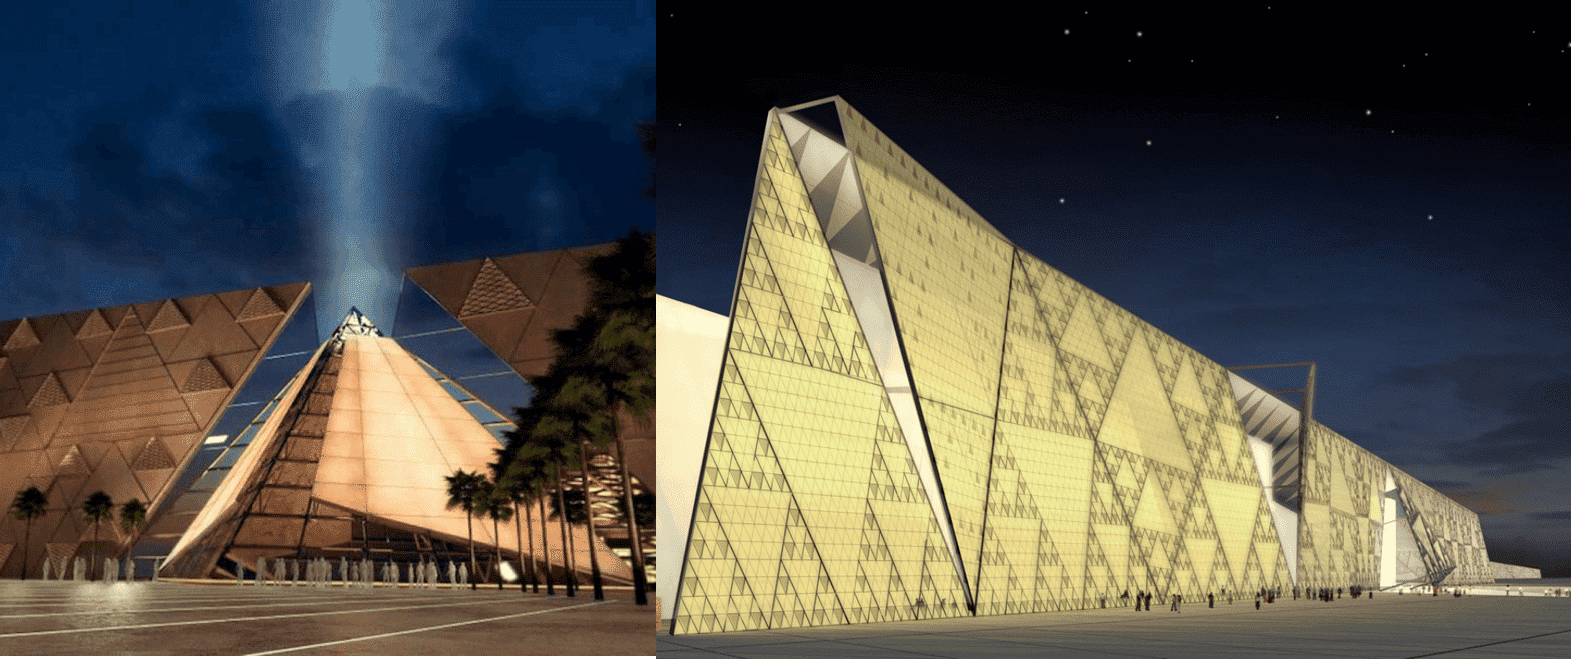 المتحف المصري الكبير (أكبر متحف للفنون والثقافة المصرية في العالم) 2022